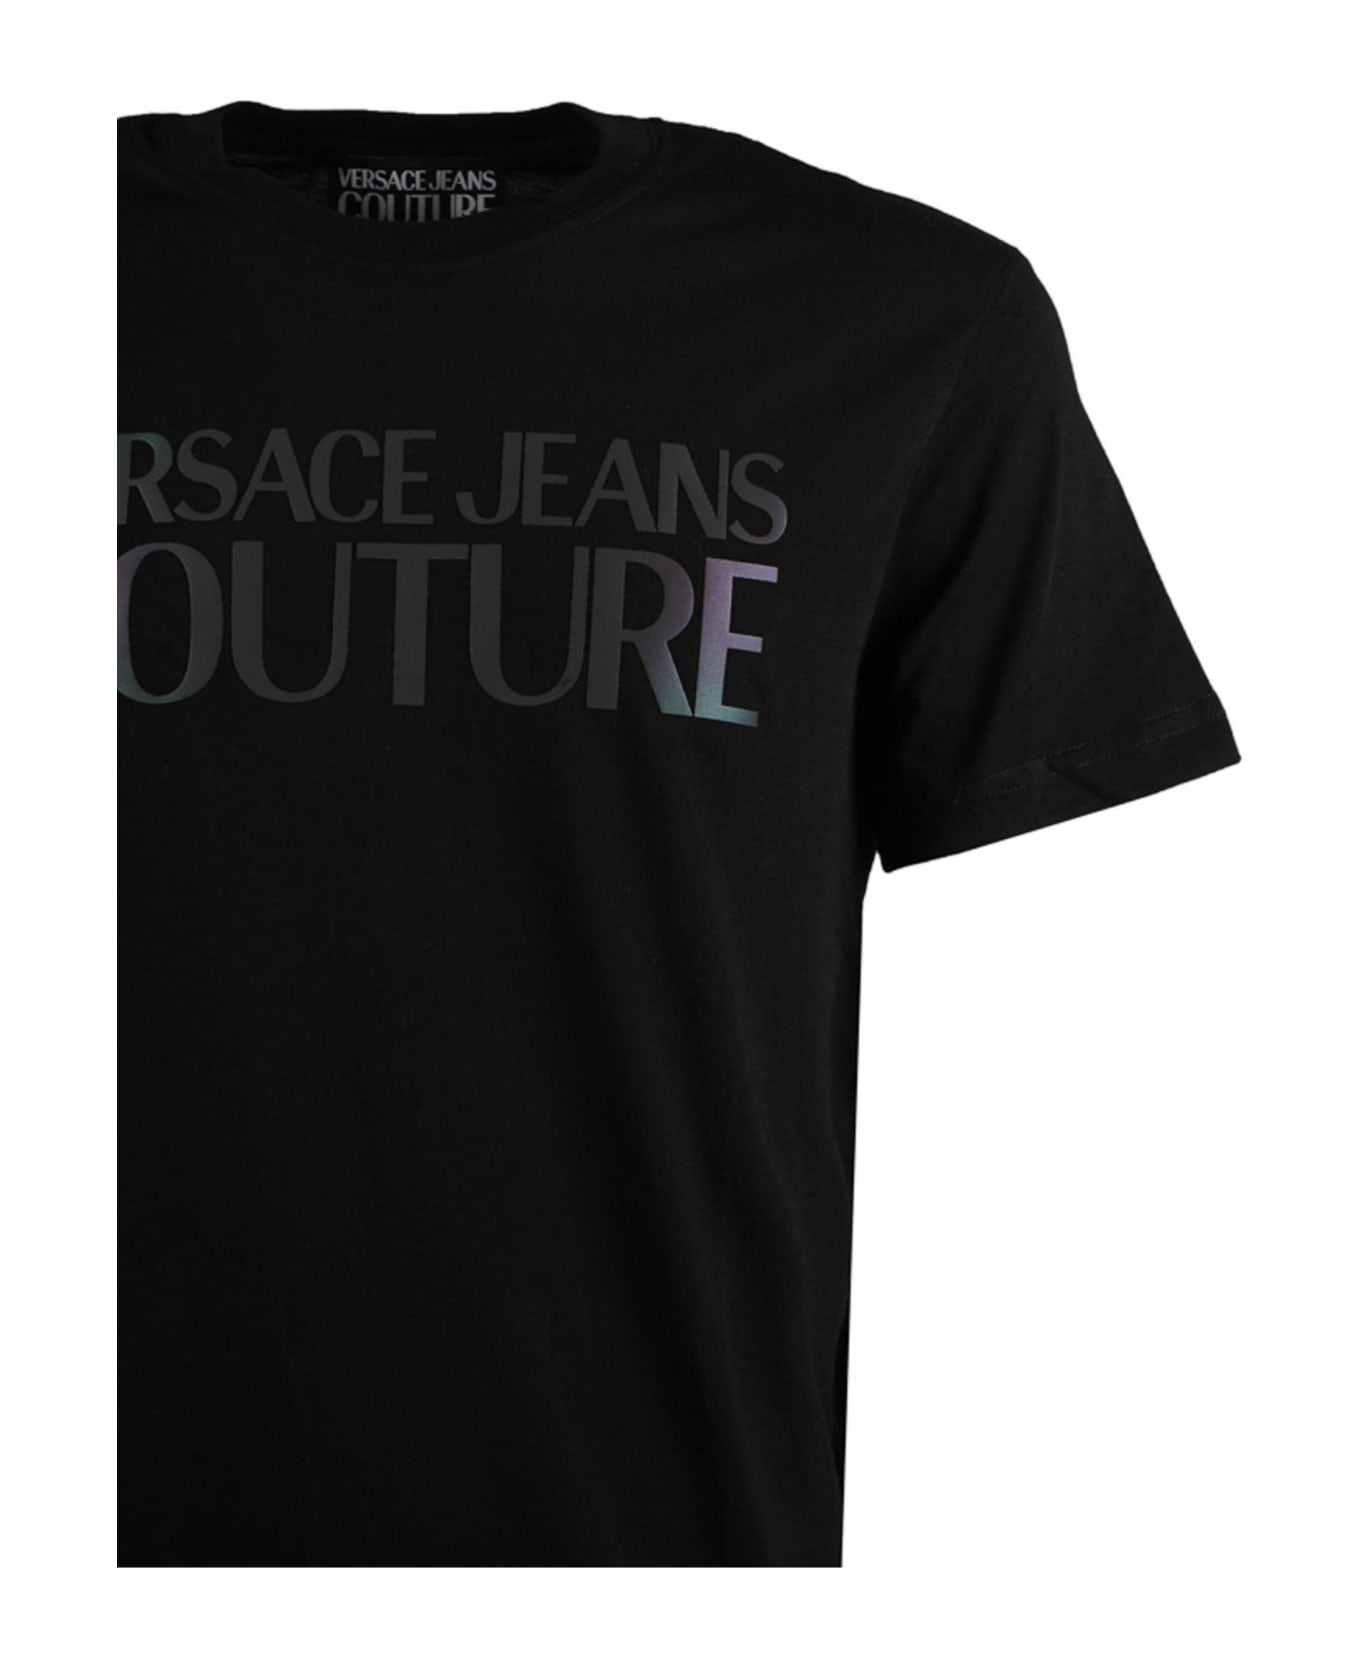 Versace Jeans Couture Black T-shirt - Black